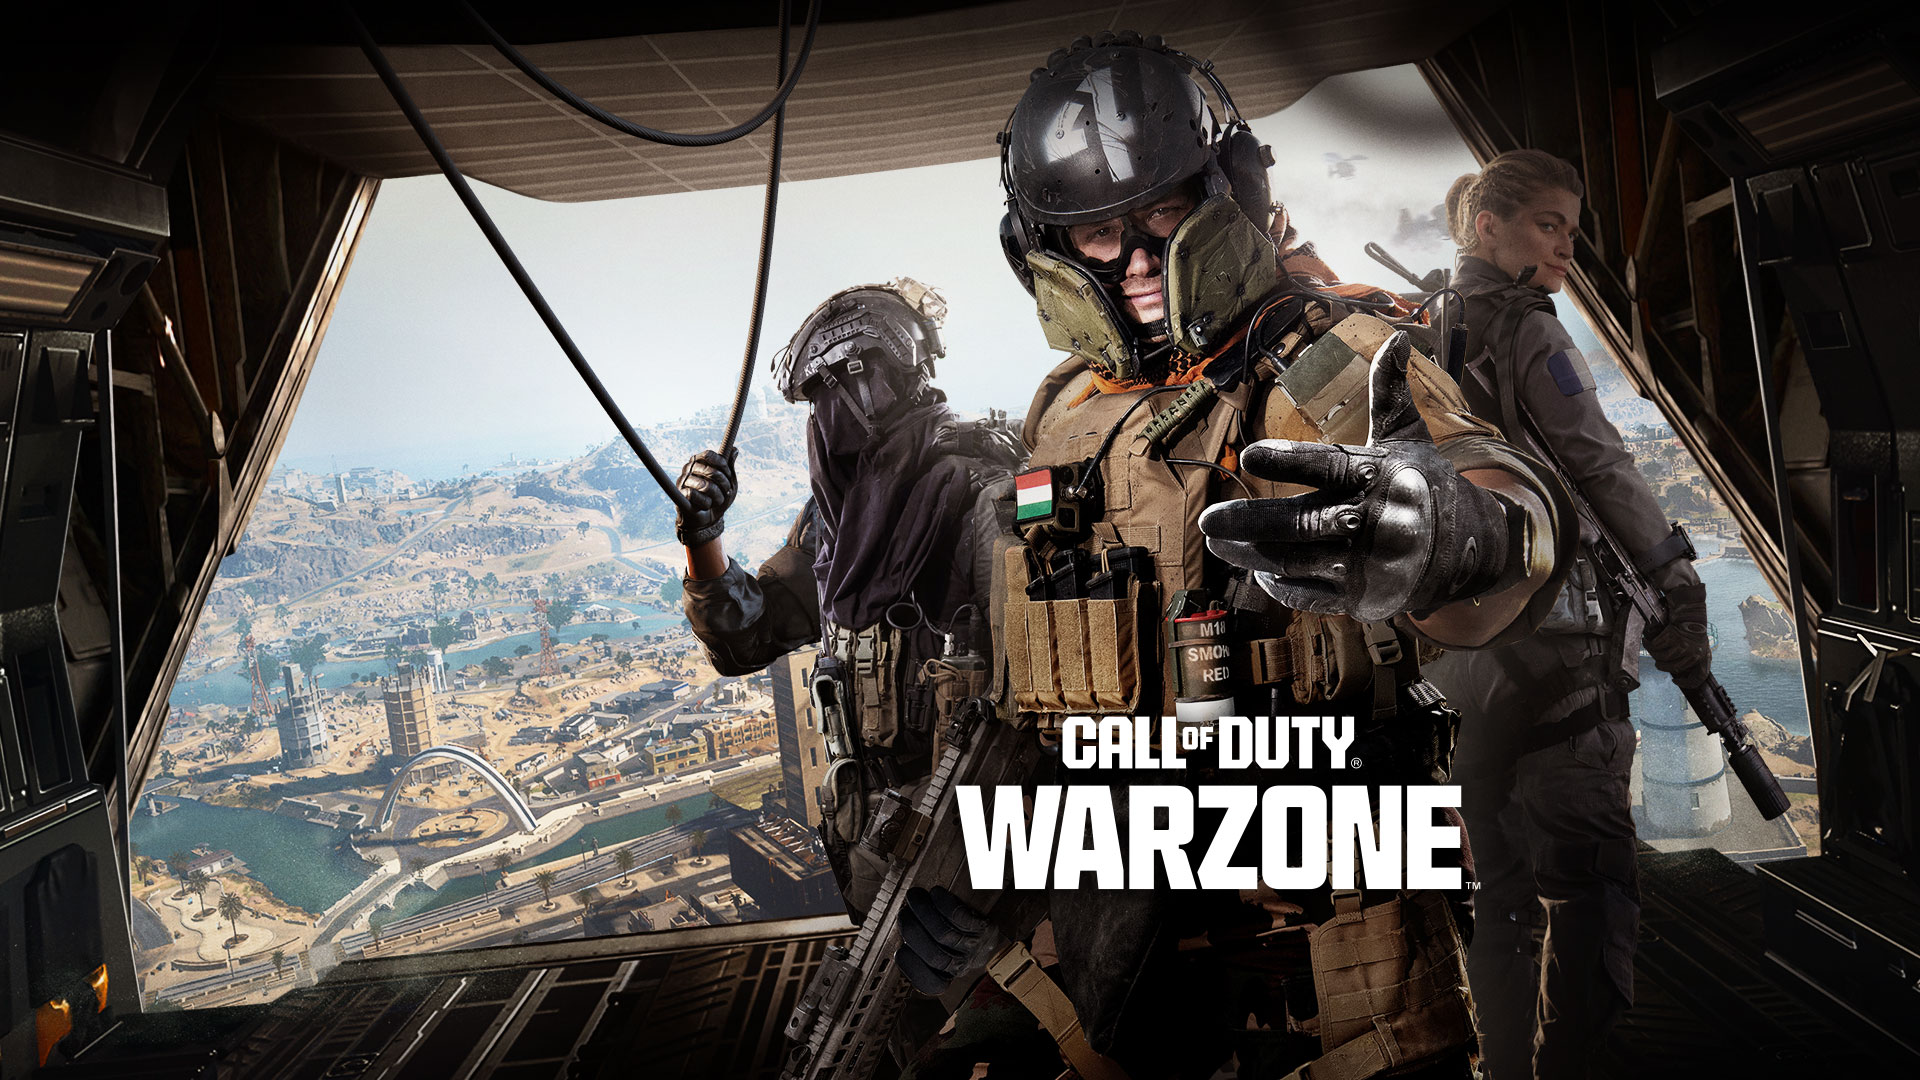 Call of Duty Warzone, ενώ στέκονται στο πίσω μέρος ενός μεταγωγικού αεροσκάφους, μια τριάδα Operator σάς προσκαλούν να πάρετε μέρος στη δράση.